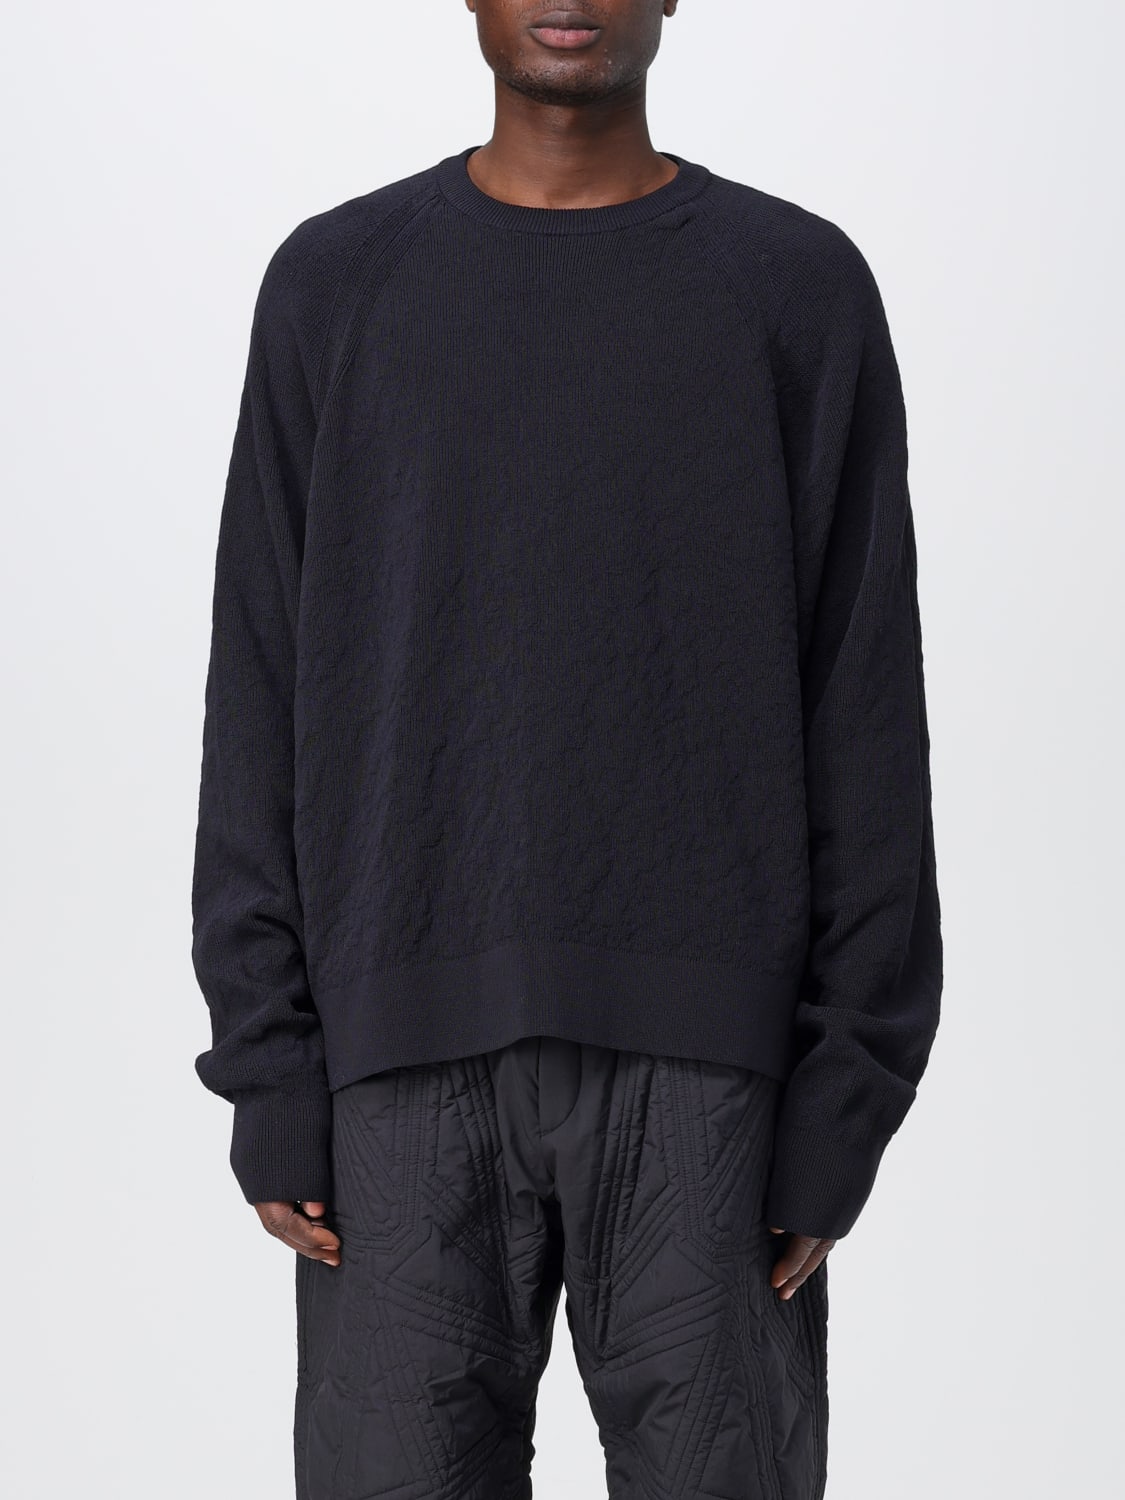 Y-3: Sweatshirt men - Black | Y-3 sweatshirt H63087 online at GIGLIO.COM